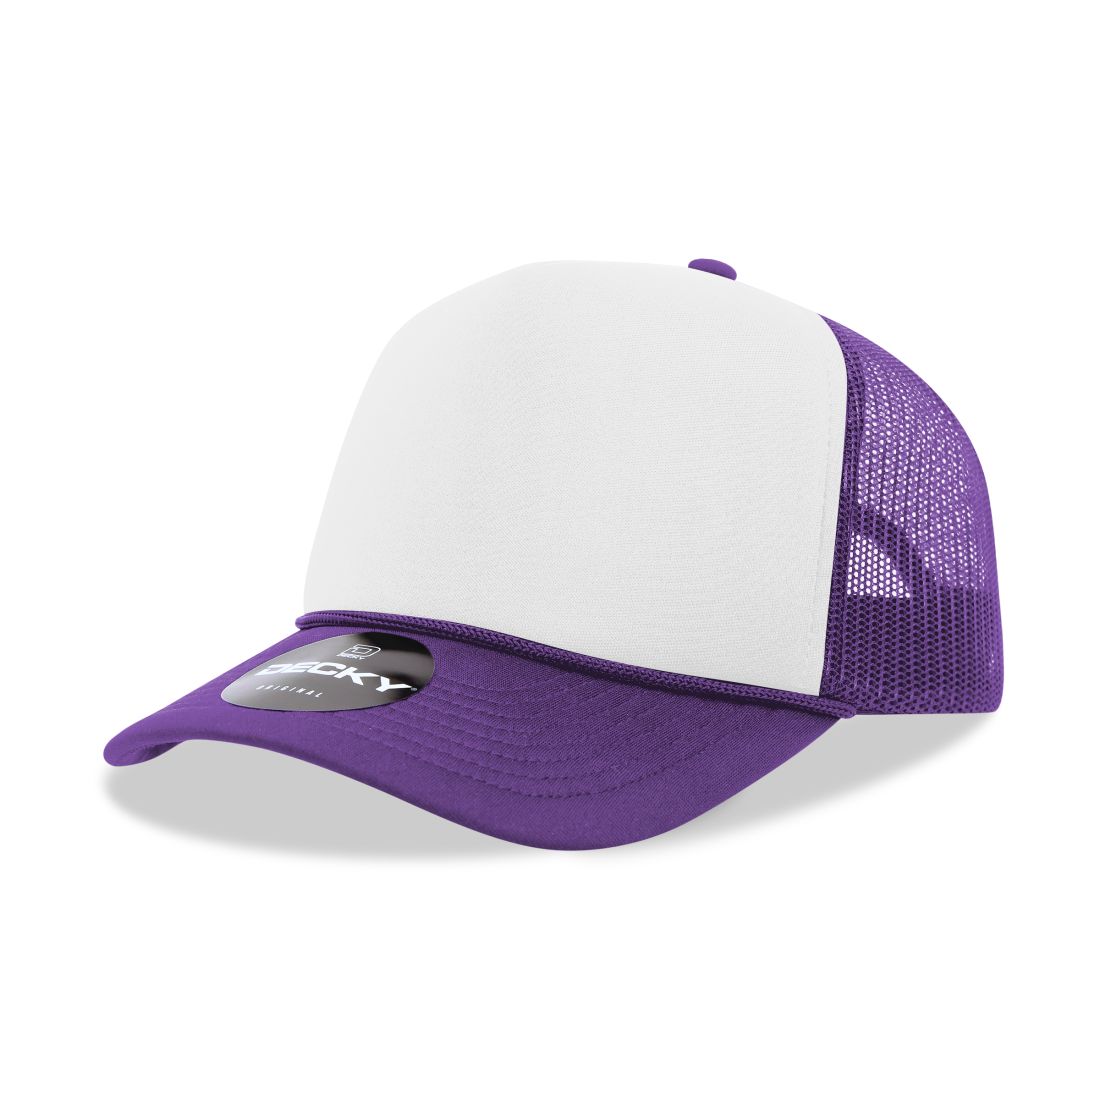 Purple/White/Purple color variant